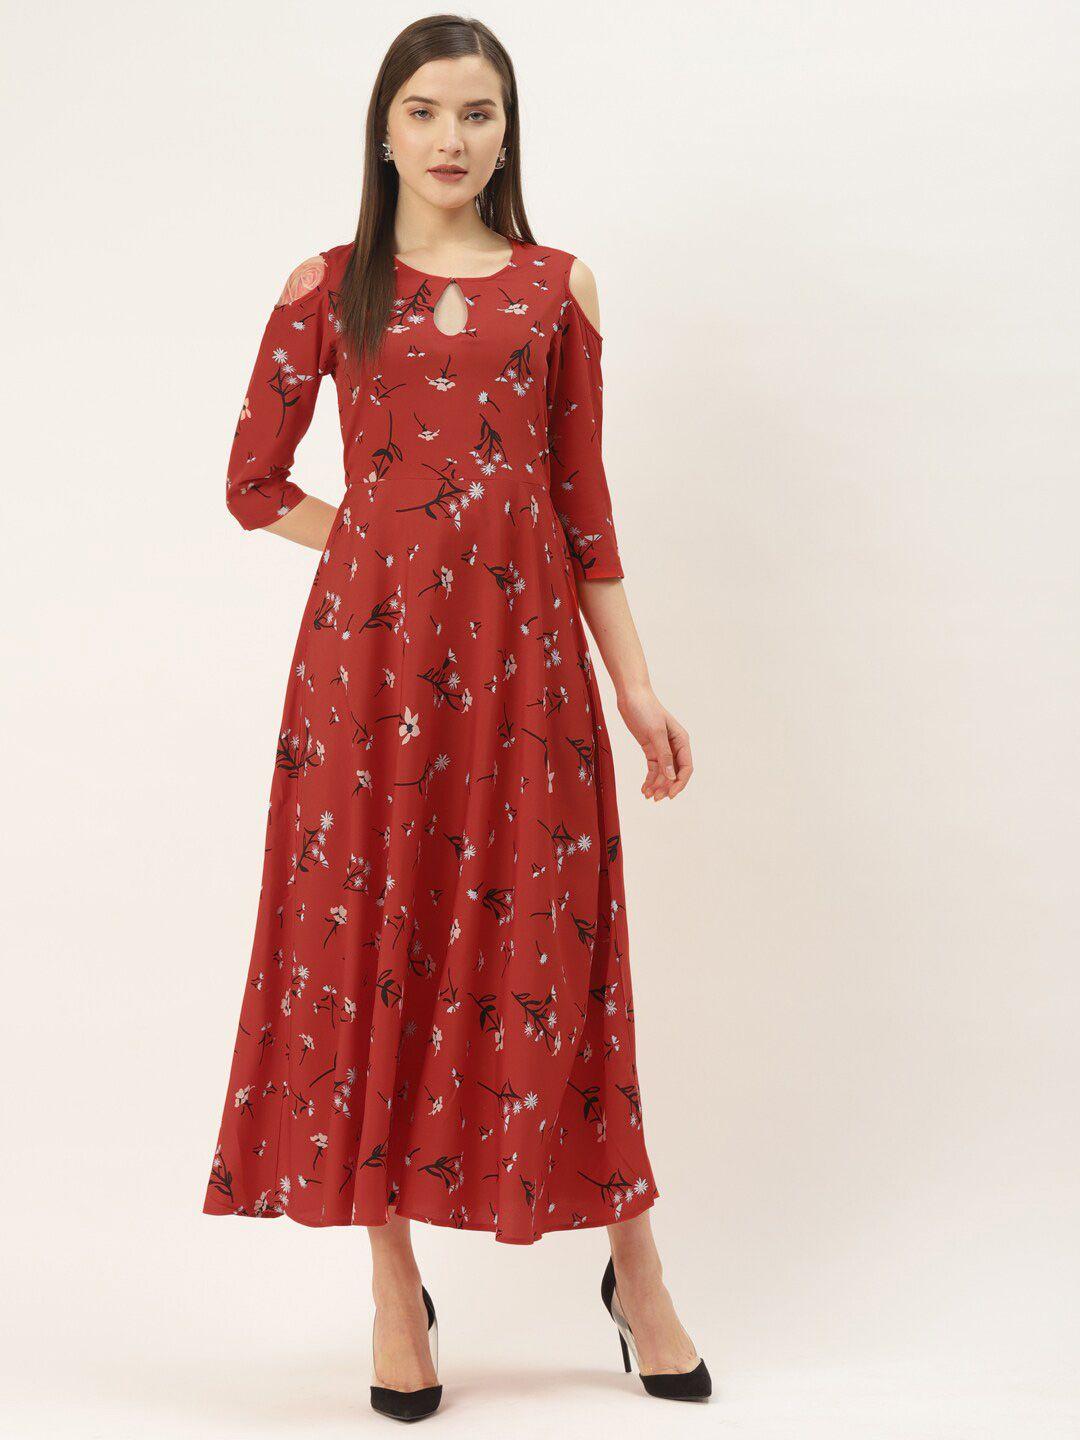 dressberry red floral printed key hole neck cold-shoulder a-line dress